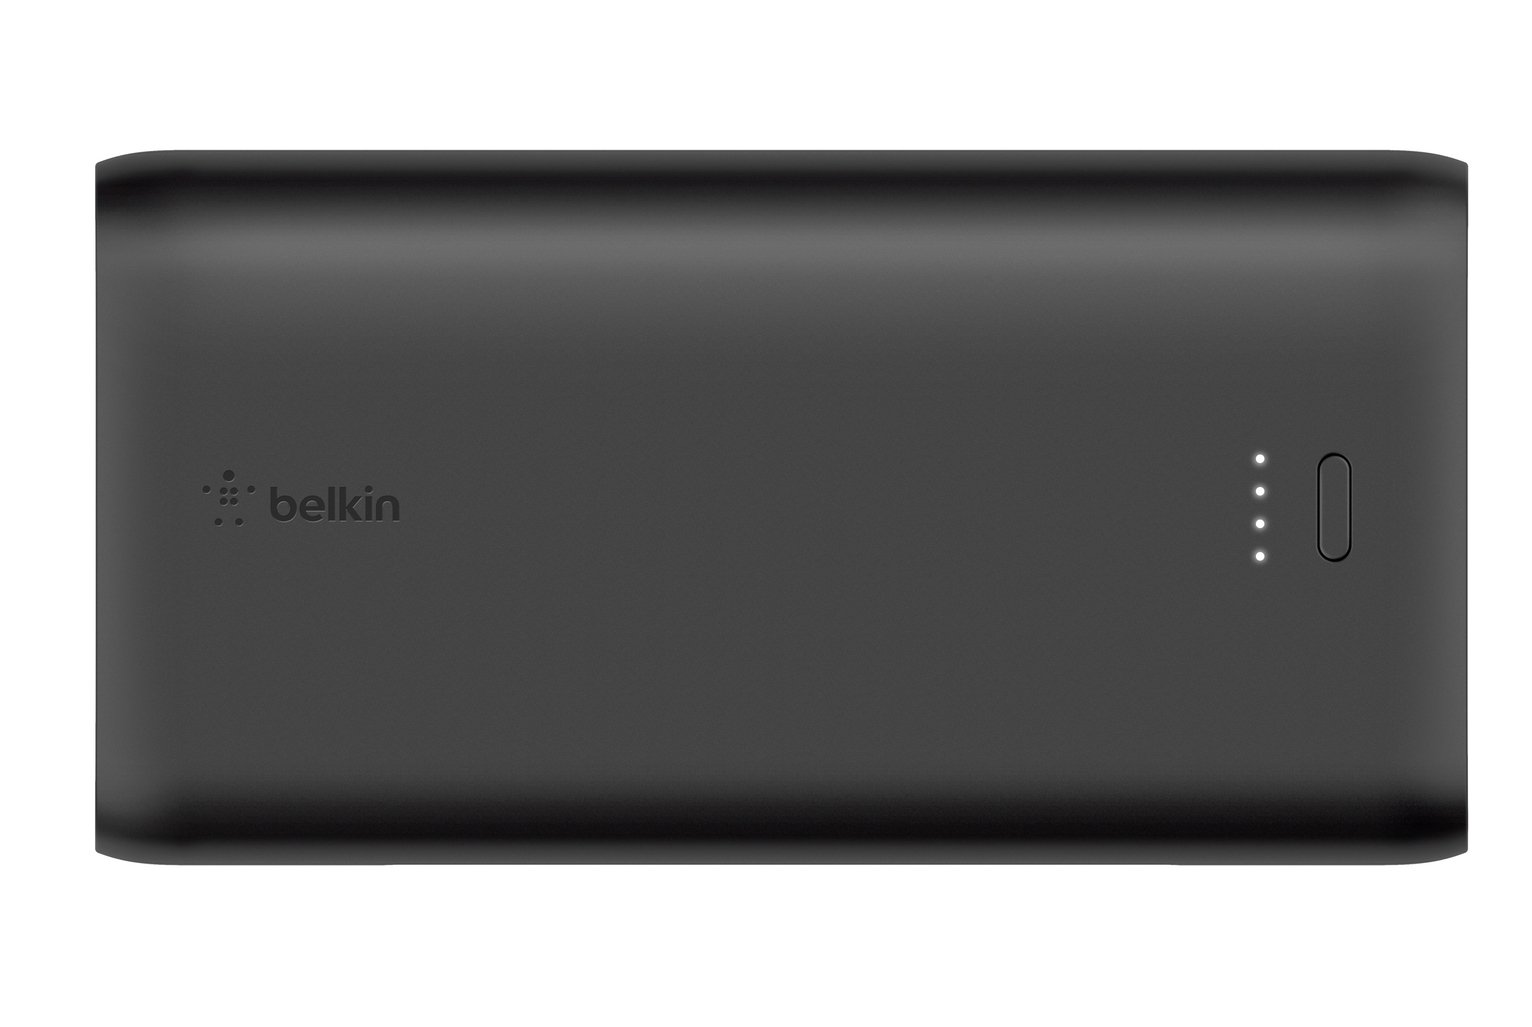 Belkin 10000mAh Portable Gaming Power Bank Review